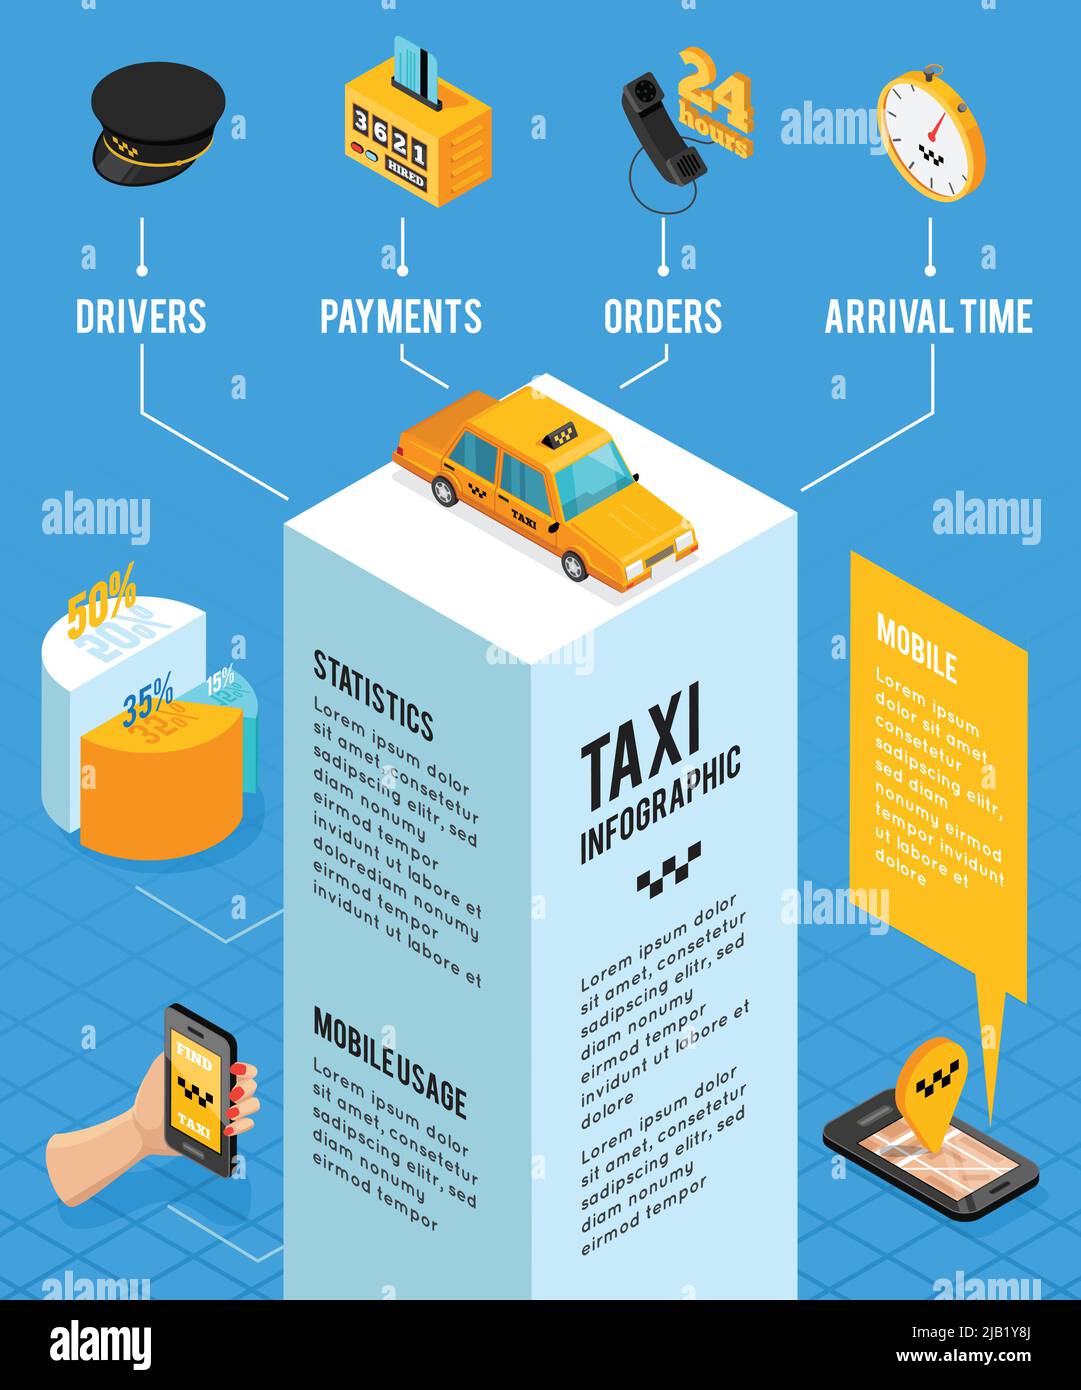 Taxi Service isometrische Infografiken Layout mit Informationen über Fahrer Zahlungen Aufträge Ankunftszeit und mobile Nutzung Vektor Illustration Stock Vektor